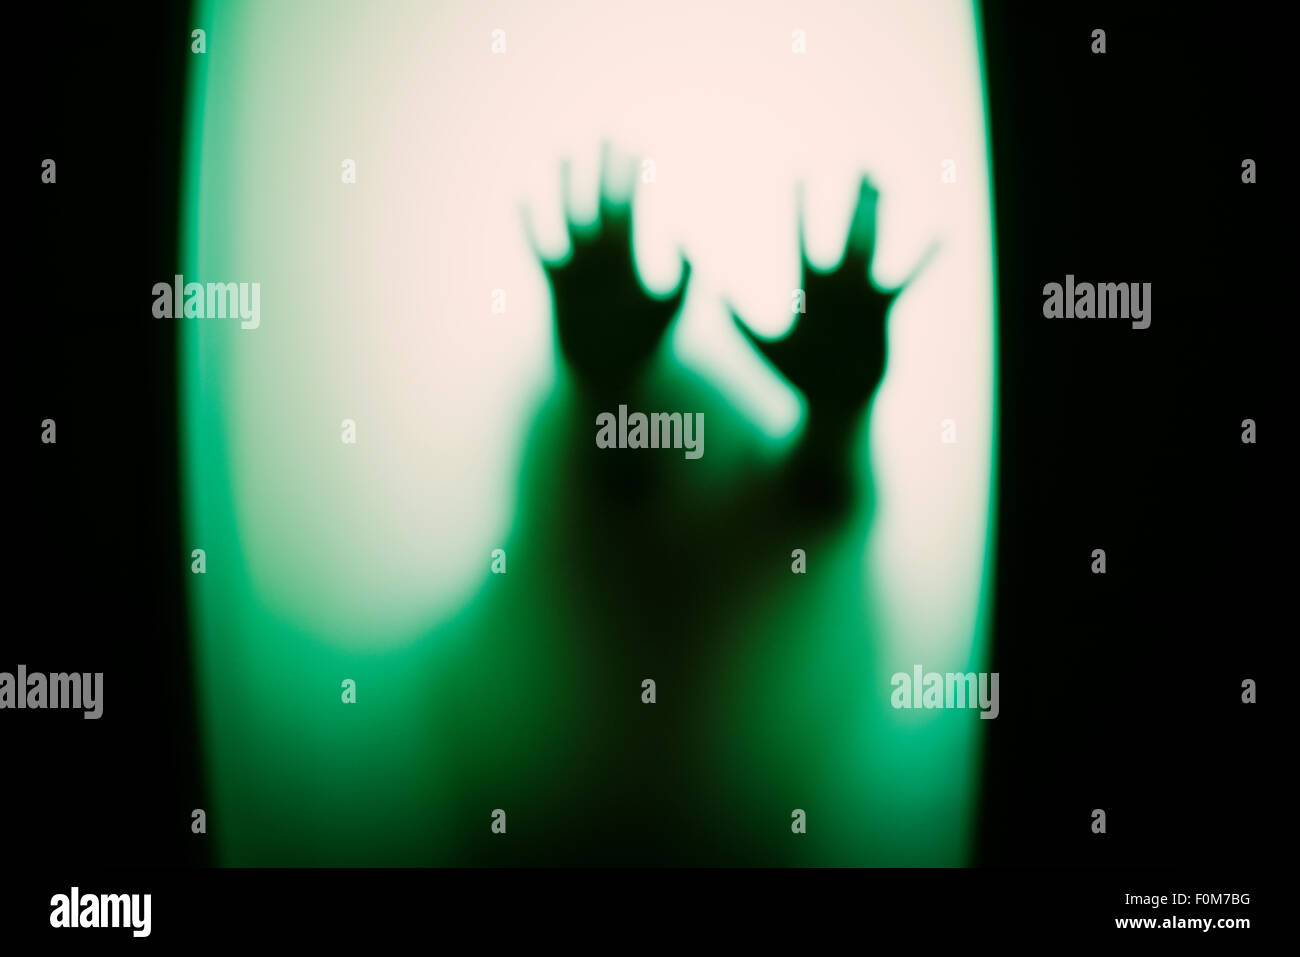 Silhouette de petit enfant holding up hands. Image conceptuelle des craintes de la petite enfance, l'abus et la sécurité des enfants. Banque D'Images